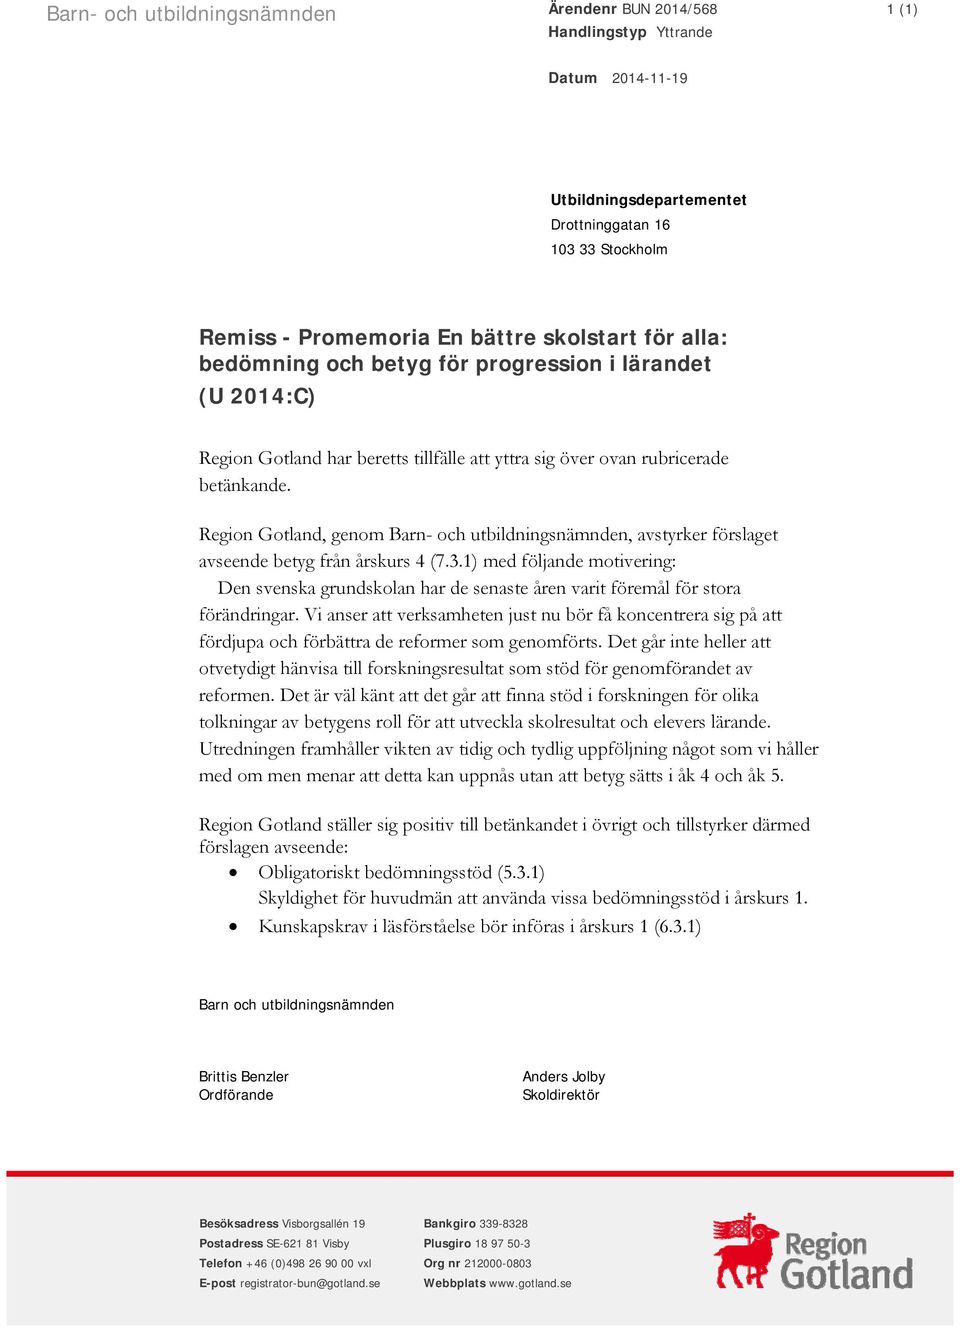 Region Gotland, genom Barn- och utbildningsnämnden, avstyrker förslaget avseende betyg från årskurs 4 (7.3.